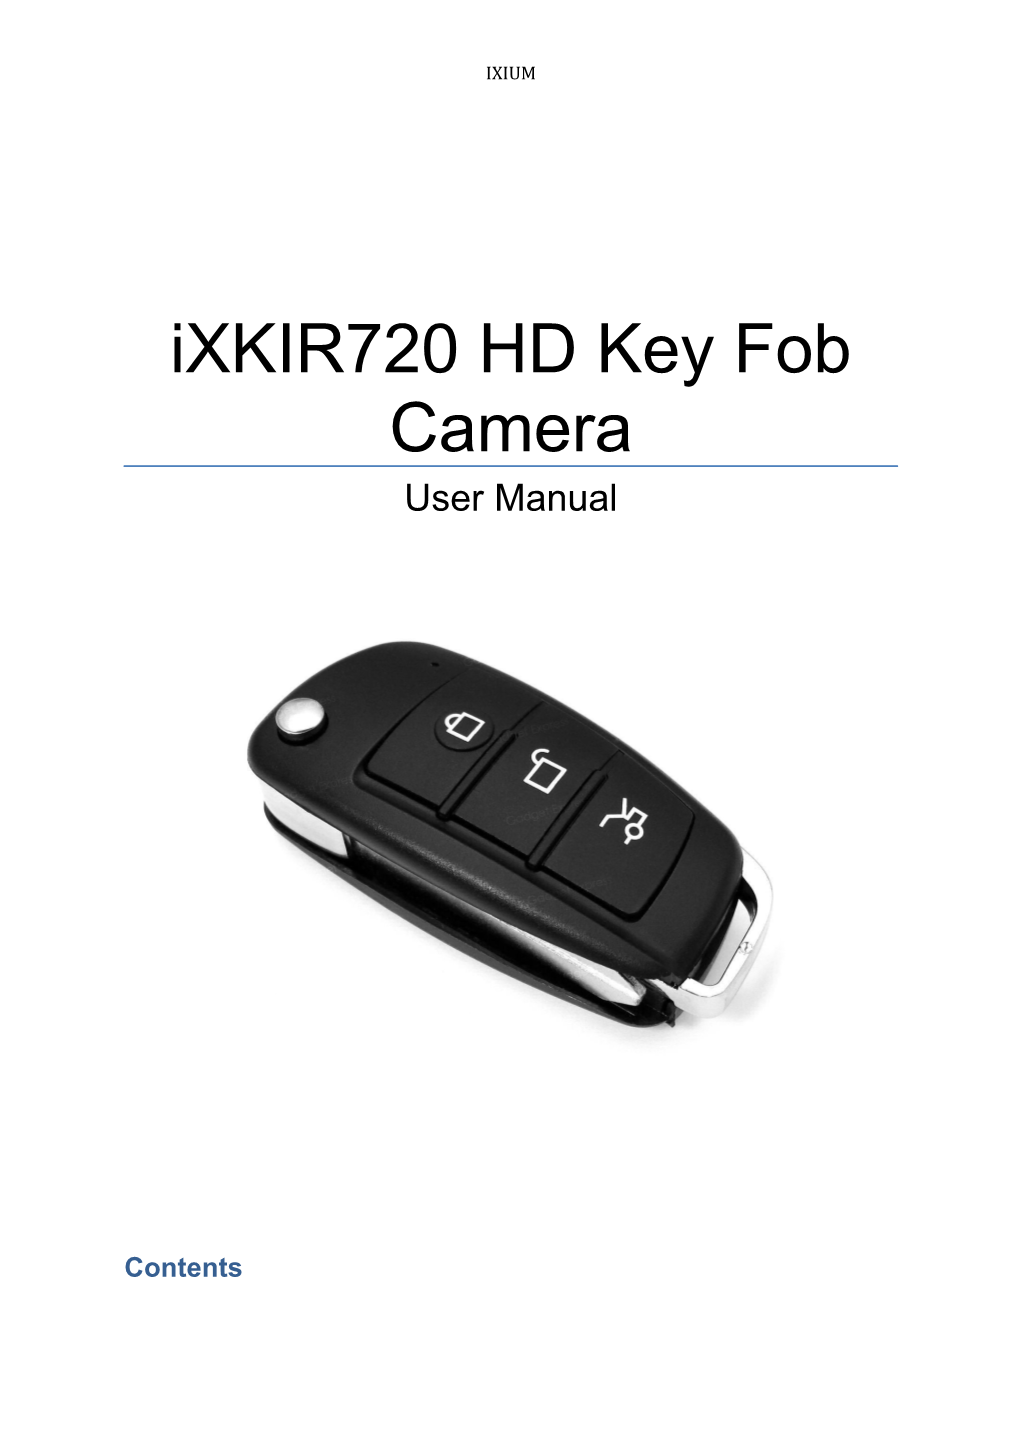 Ixkir720 HD Key Fob Camera